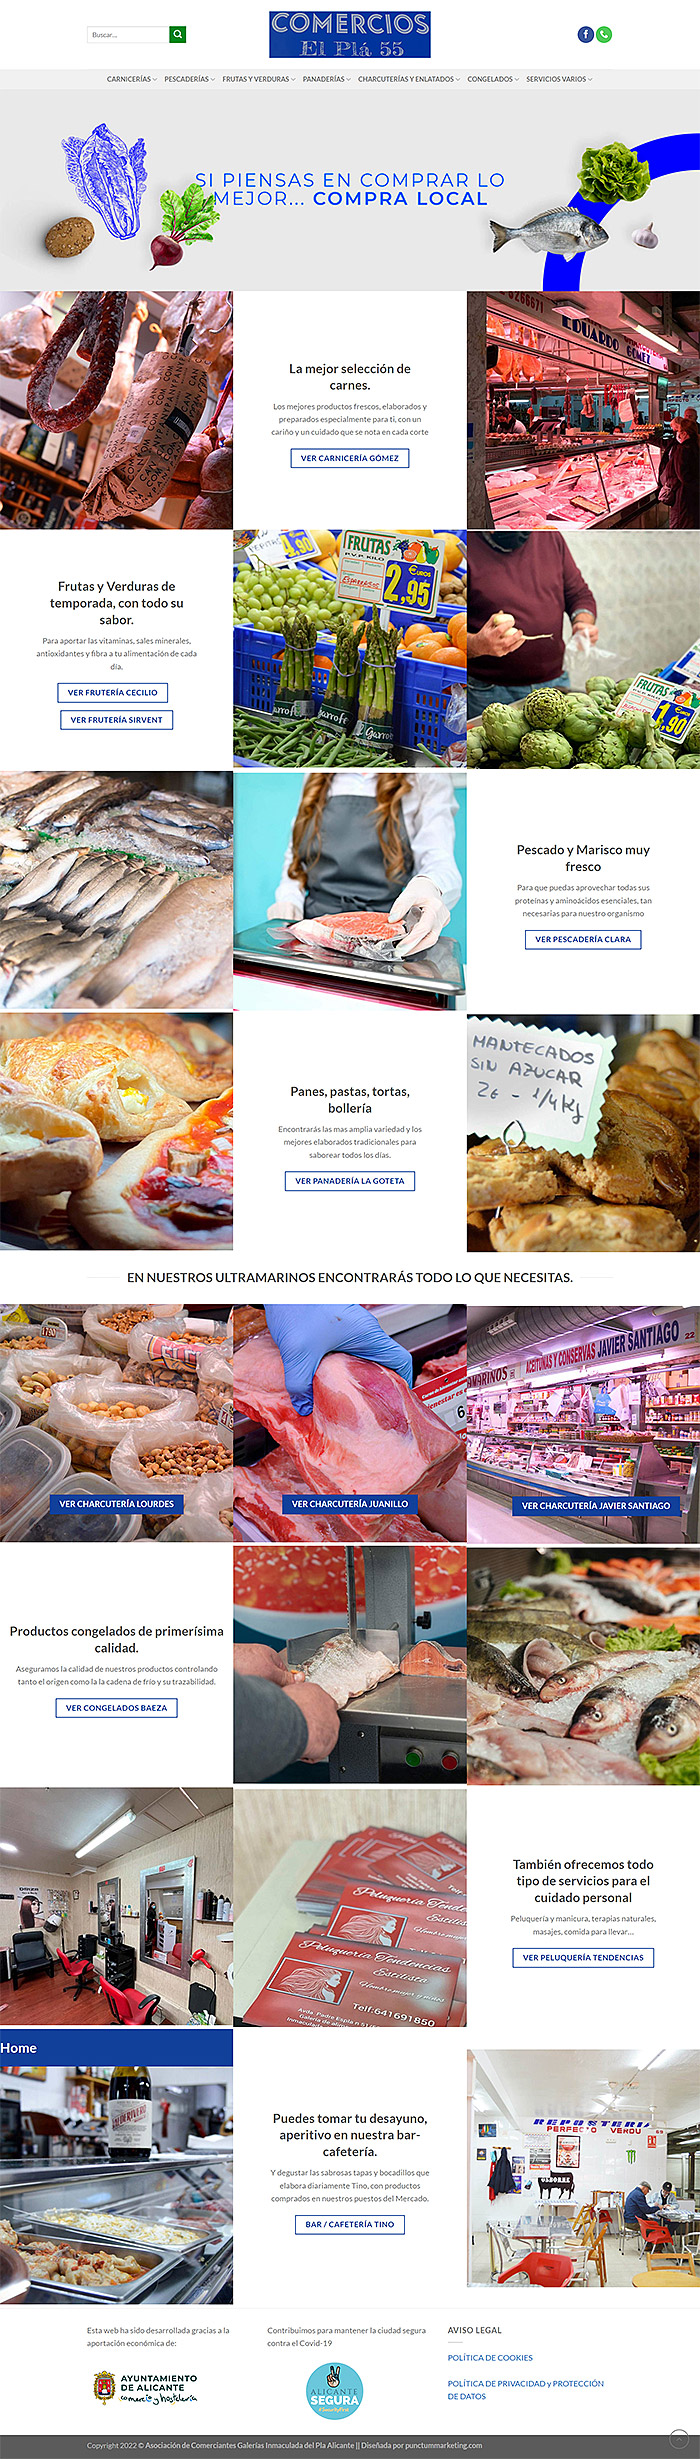 Imagen con detalle de pagina web asociación de comerciantes el pla 55. Comercios de alimentación, carne, pescado, verduras, frutas, panadería, frutos secos. En alicante